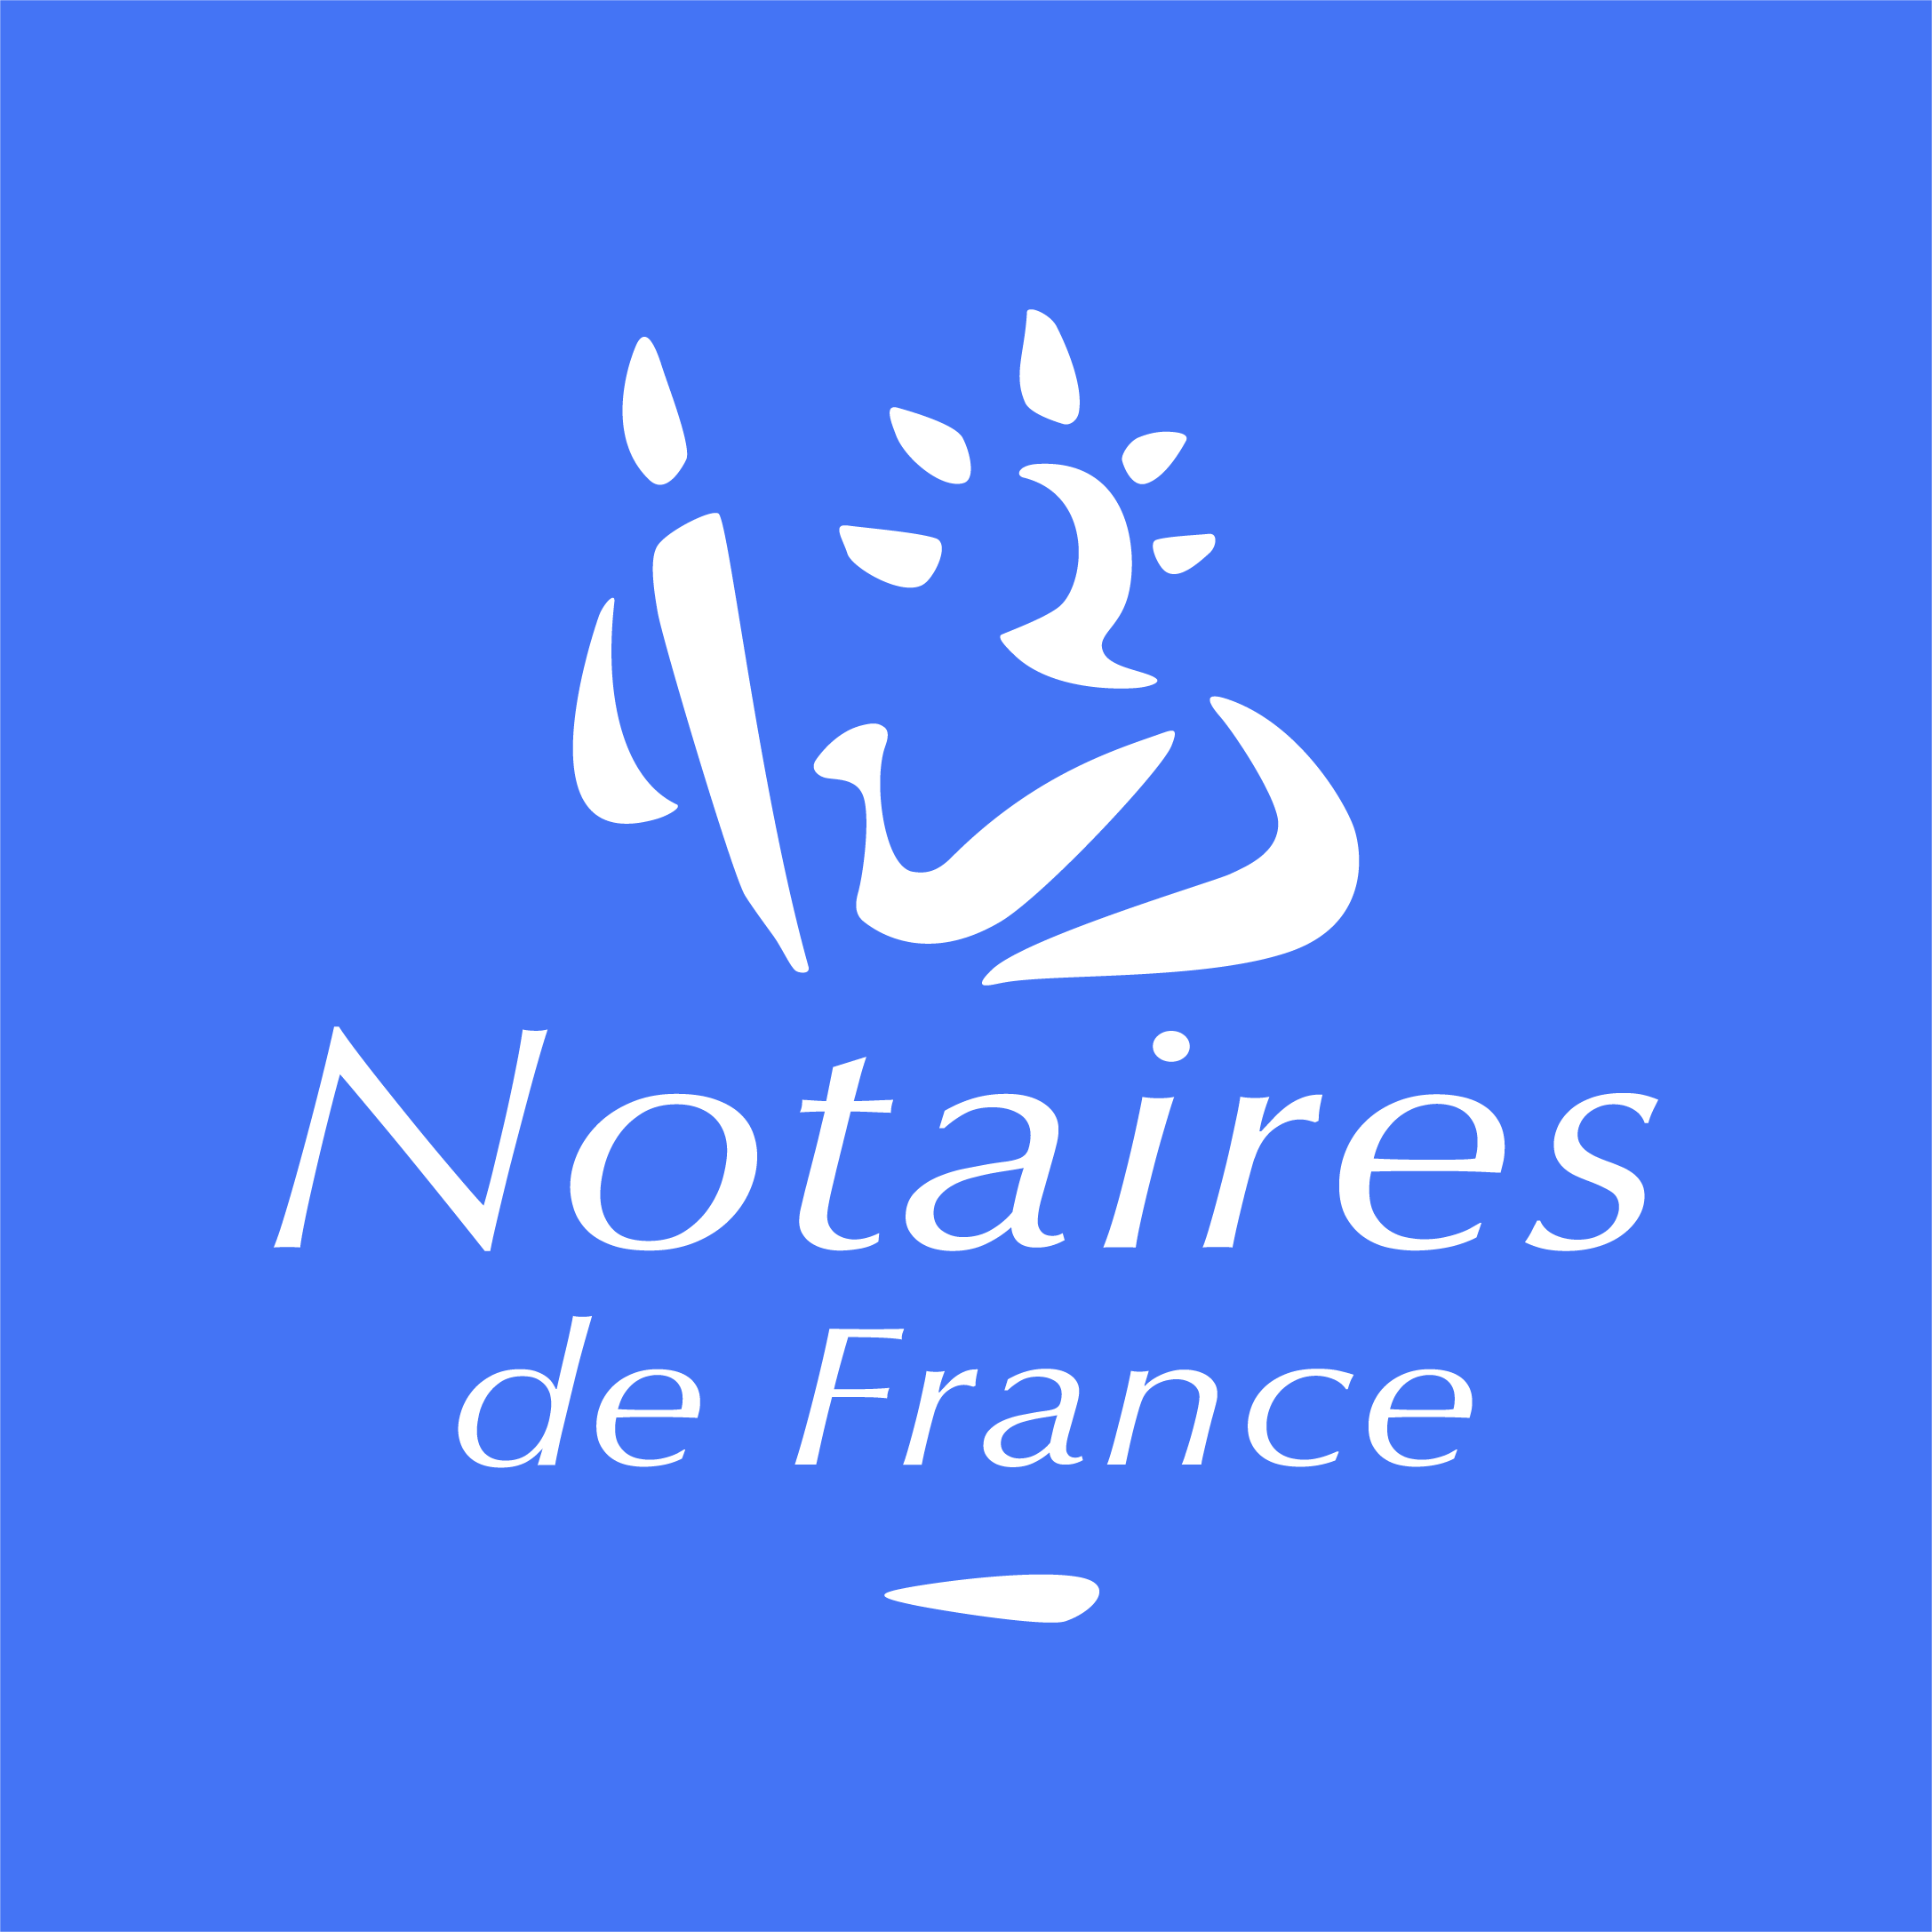 Bienvenue sur le nouveau site notaires.fr !